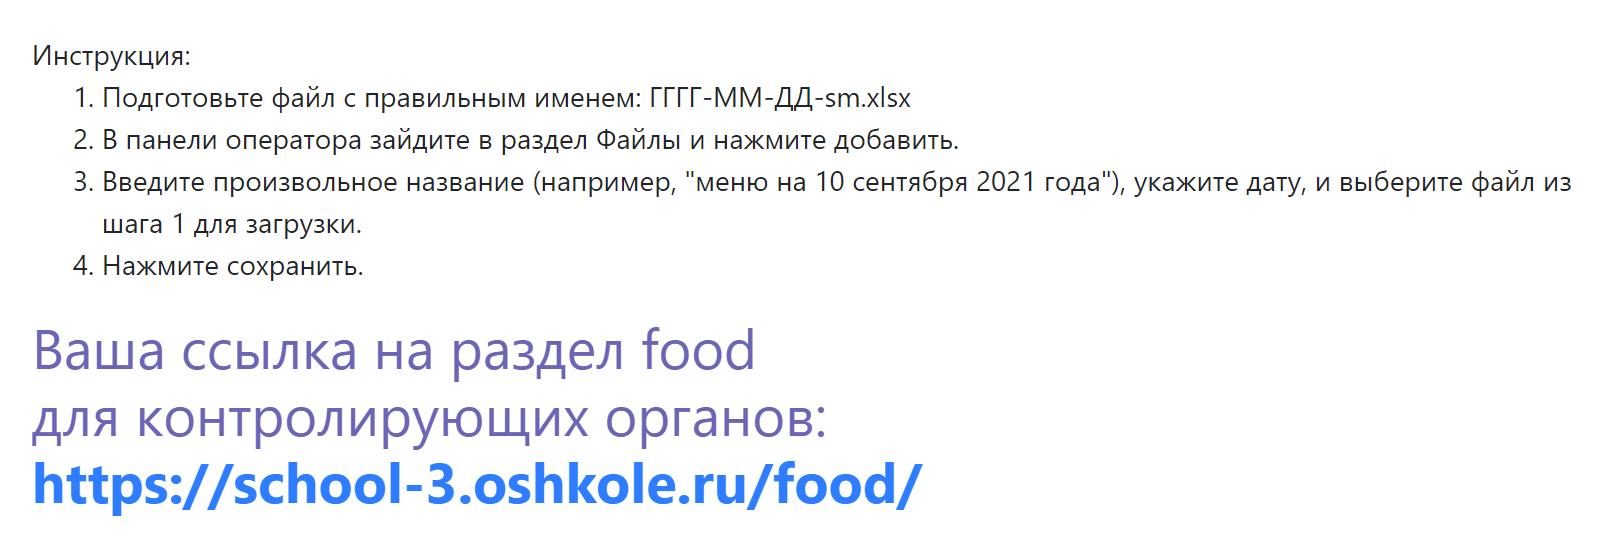 Инструкция FOOD.png